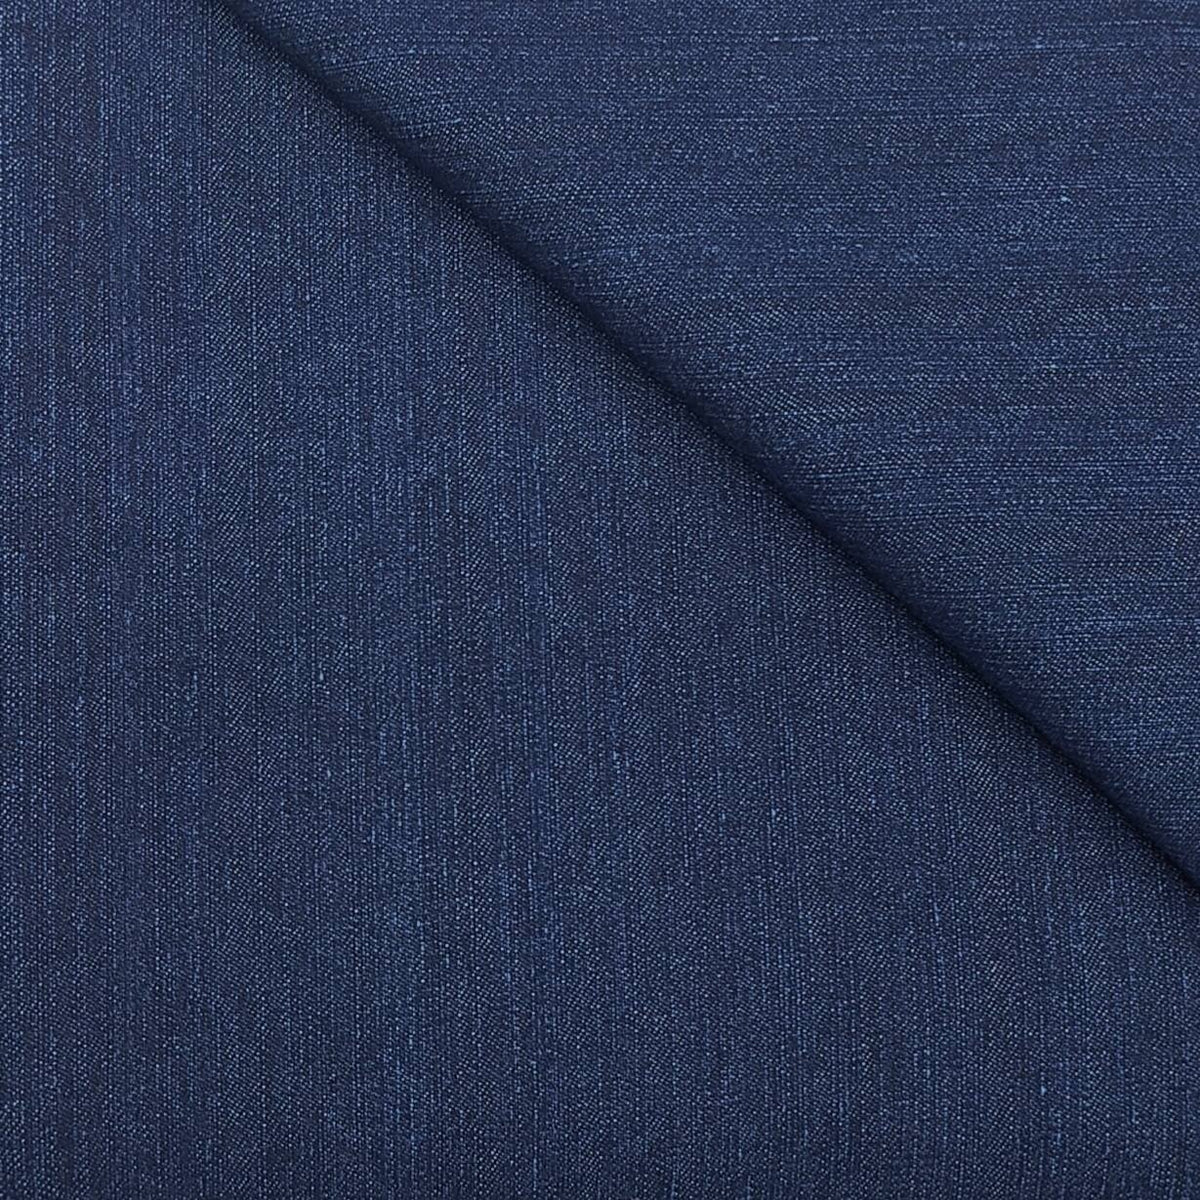 Arvind cotton denim stretchable jeans fabric colour Cobalt Blue